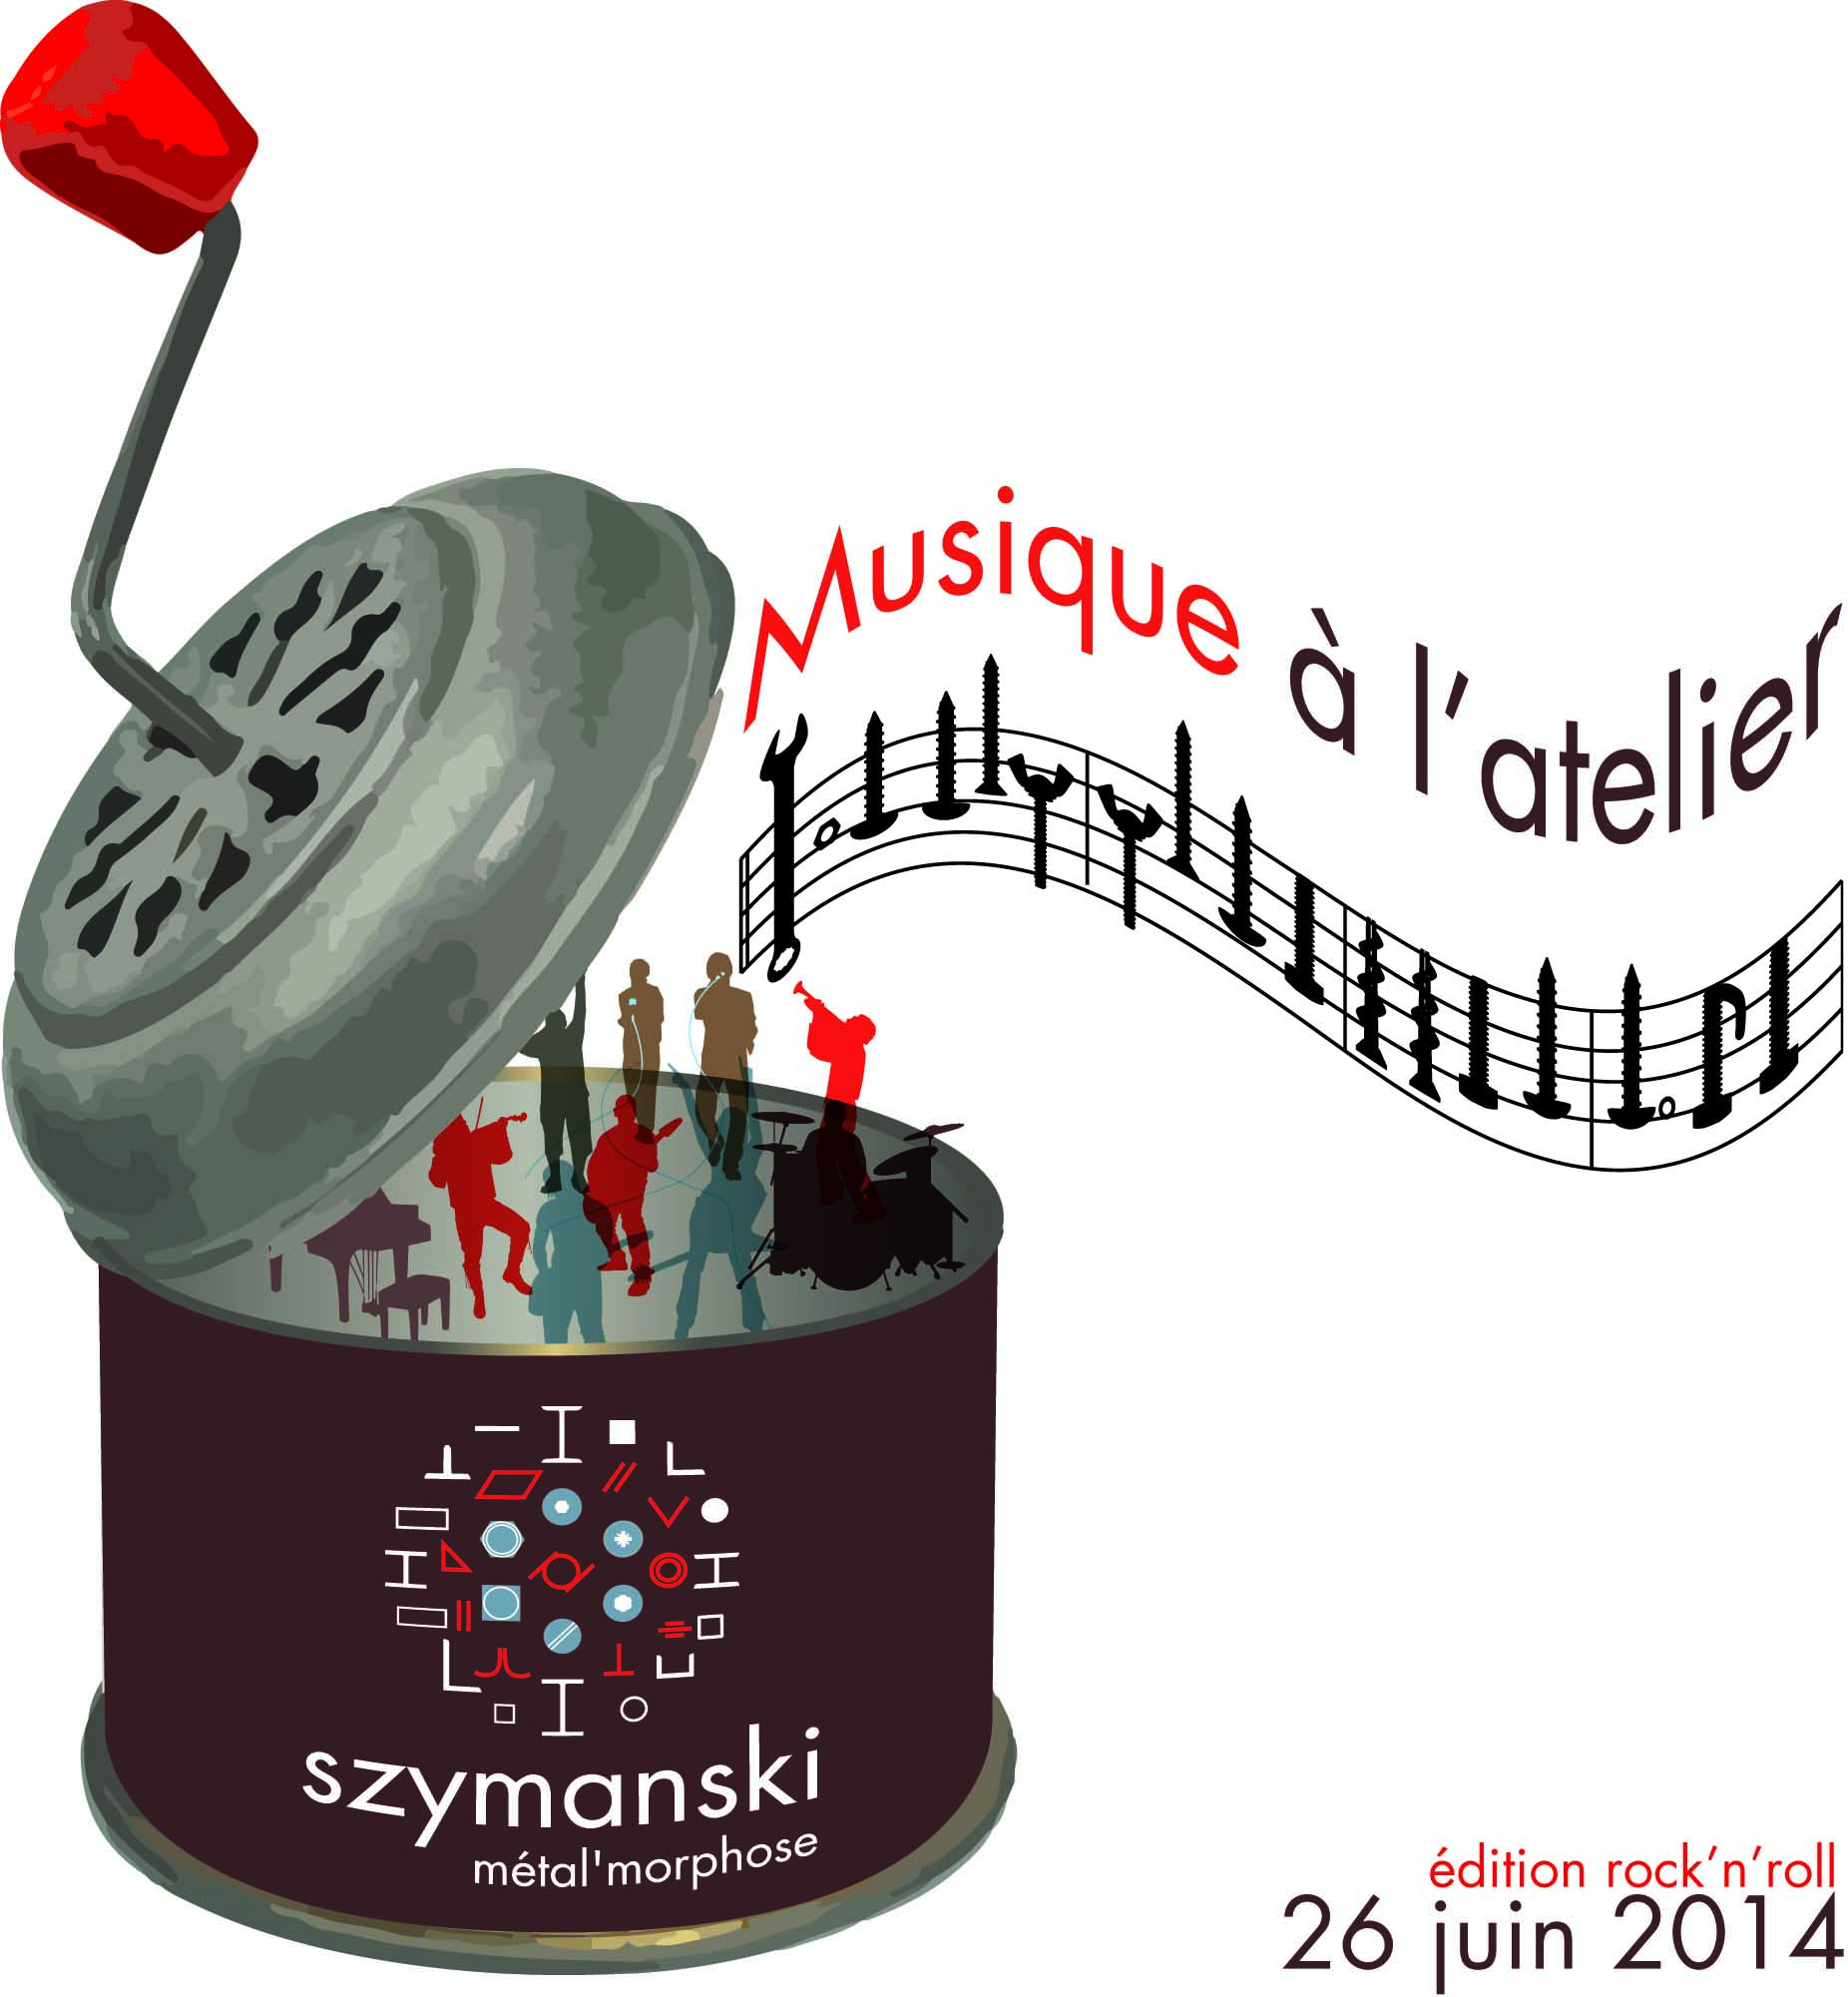 Illustration de l'événement musique à l'atelier dans les locaux de Szymanski